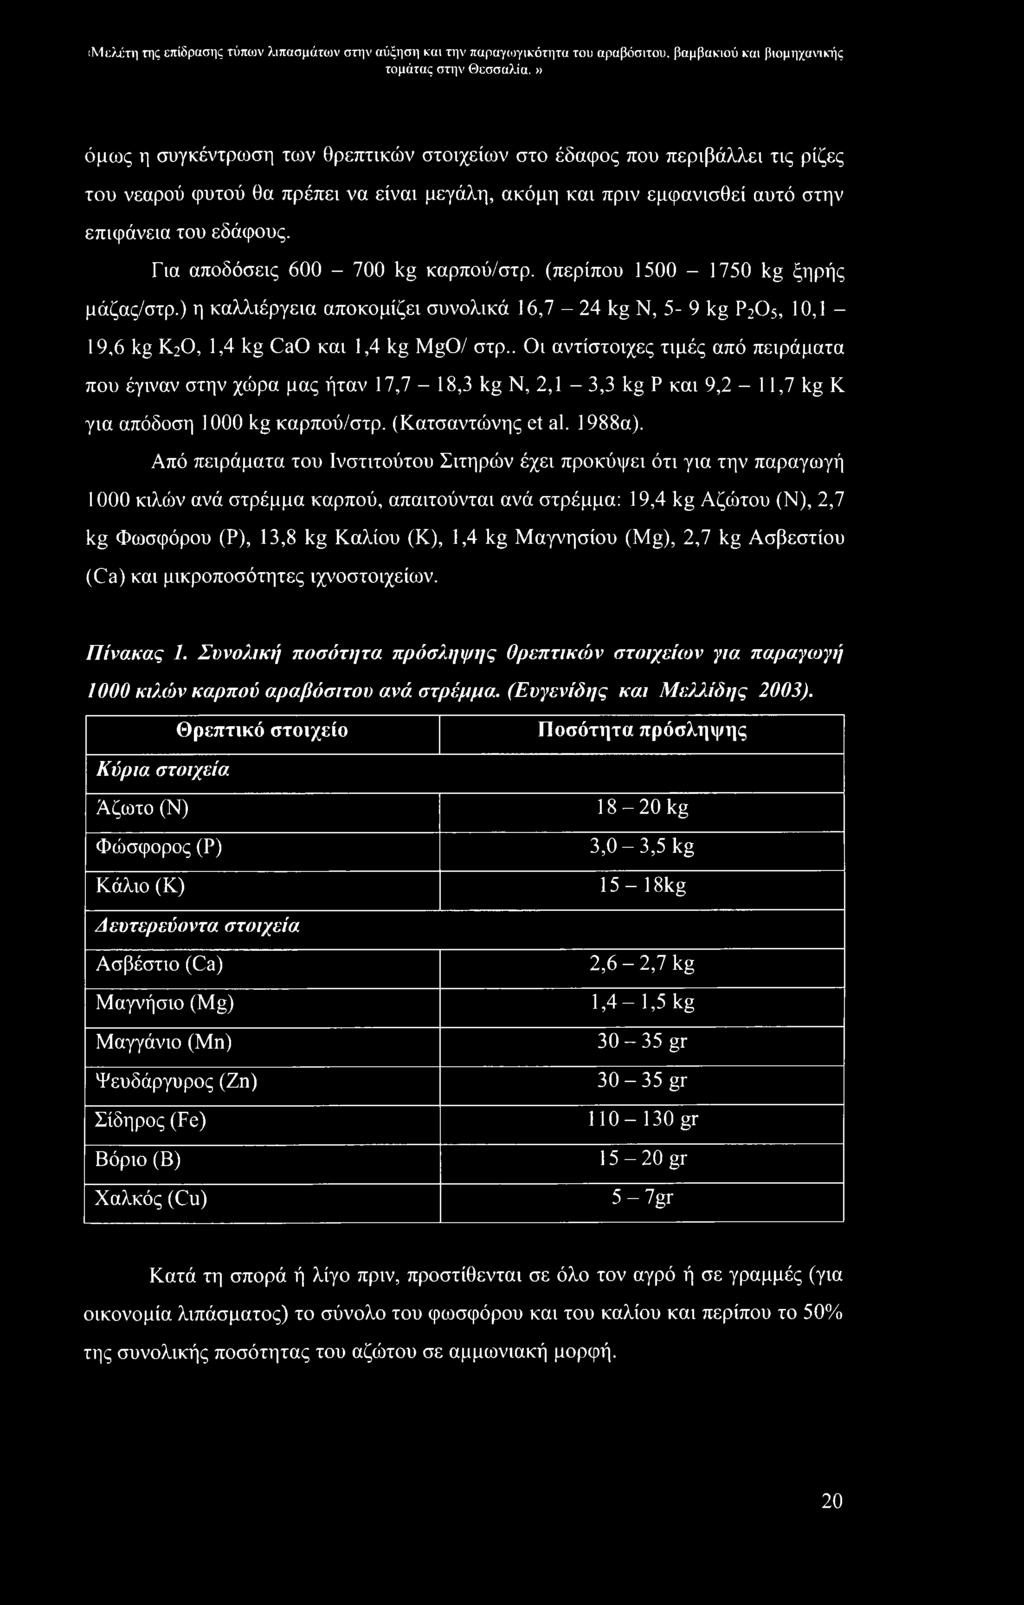 Από πειράματα του Ινστιτούτου Σιτηρών έχει προκύψει ότι για την παραγωγή 1000 κιλών ανά στρέμμα καρπού, απαιτούνται ανά στρέμμα: 19,4 kg Αζώτου (Ν), 2,7 kg Φωσφόρου (Ρ), 13,8 kg Καλίου (Κ), 1,4 kg